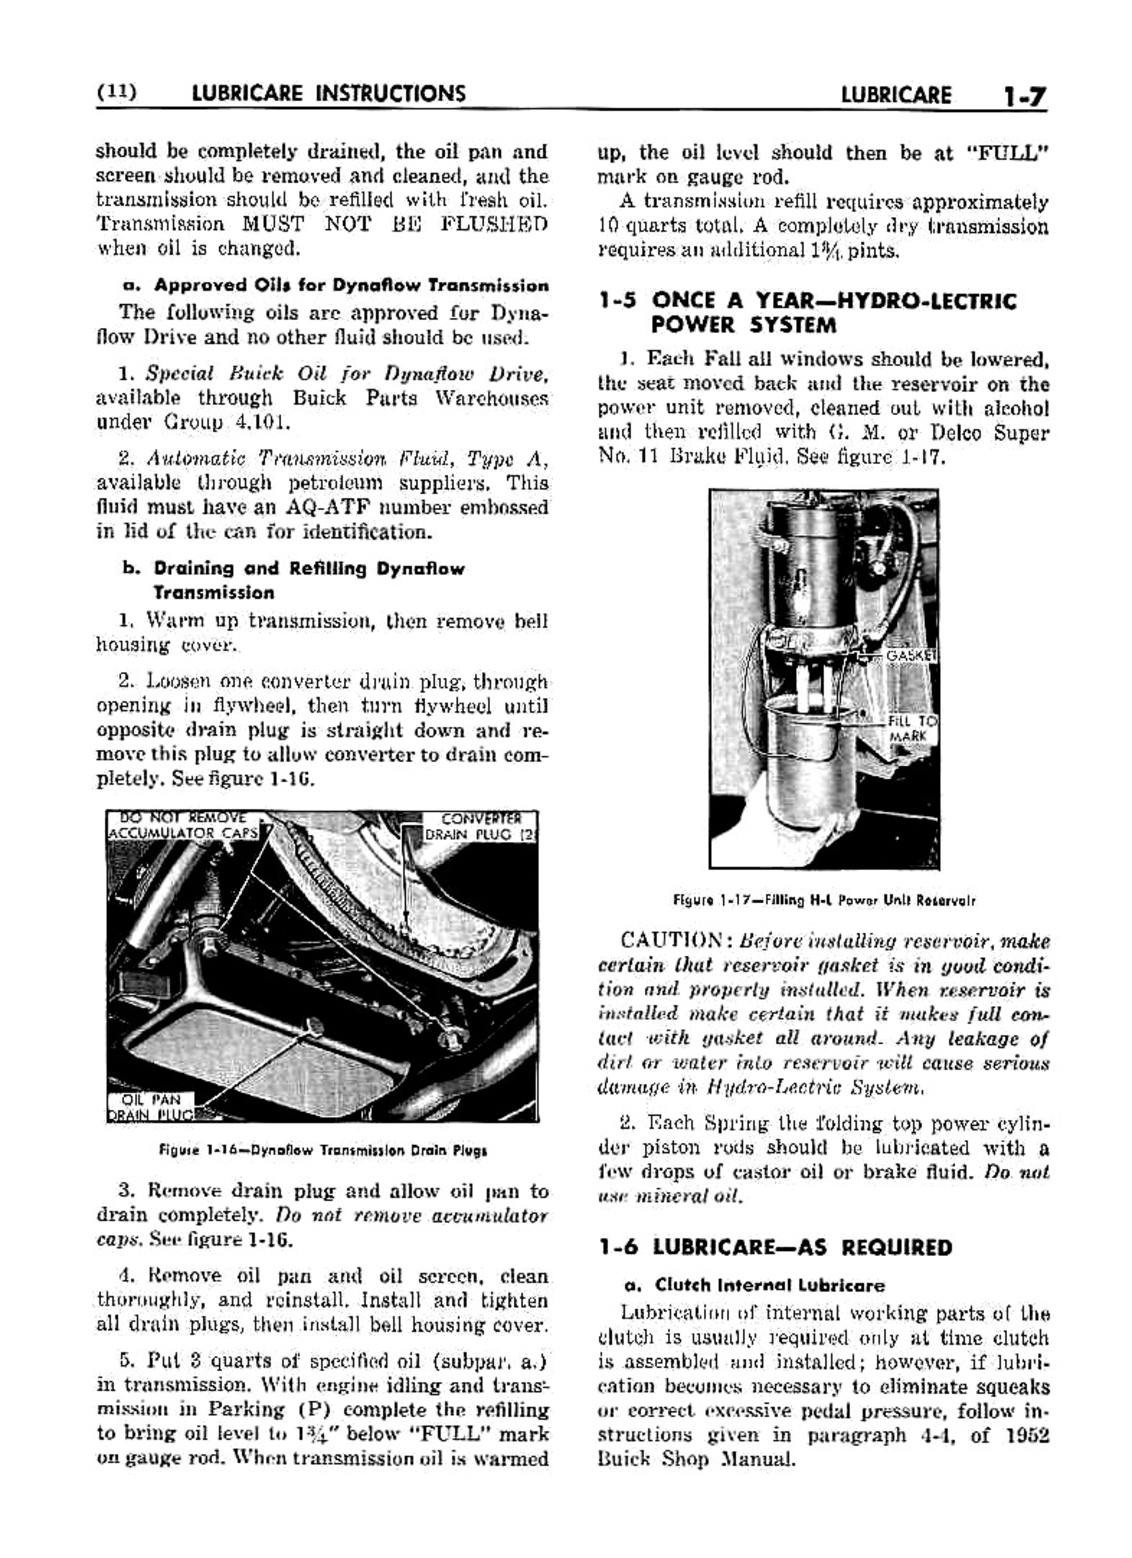 n_02 1953 Buick Shop Manual - Lubricare-007-007.jpg